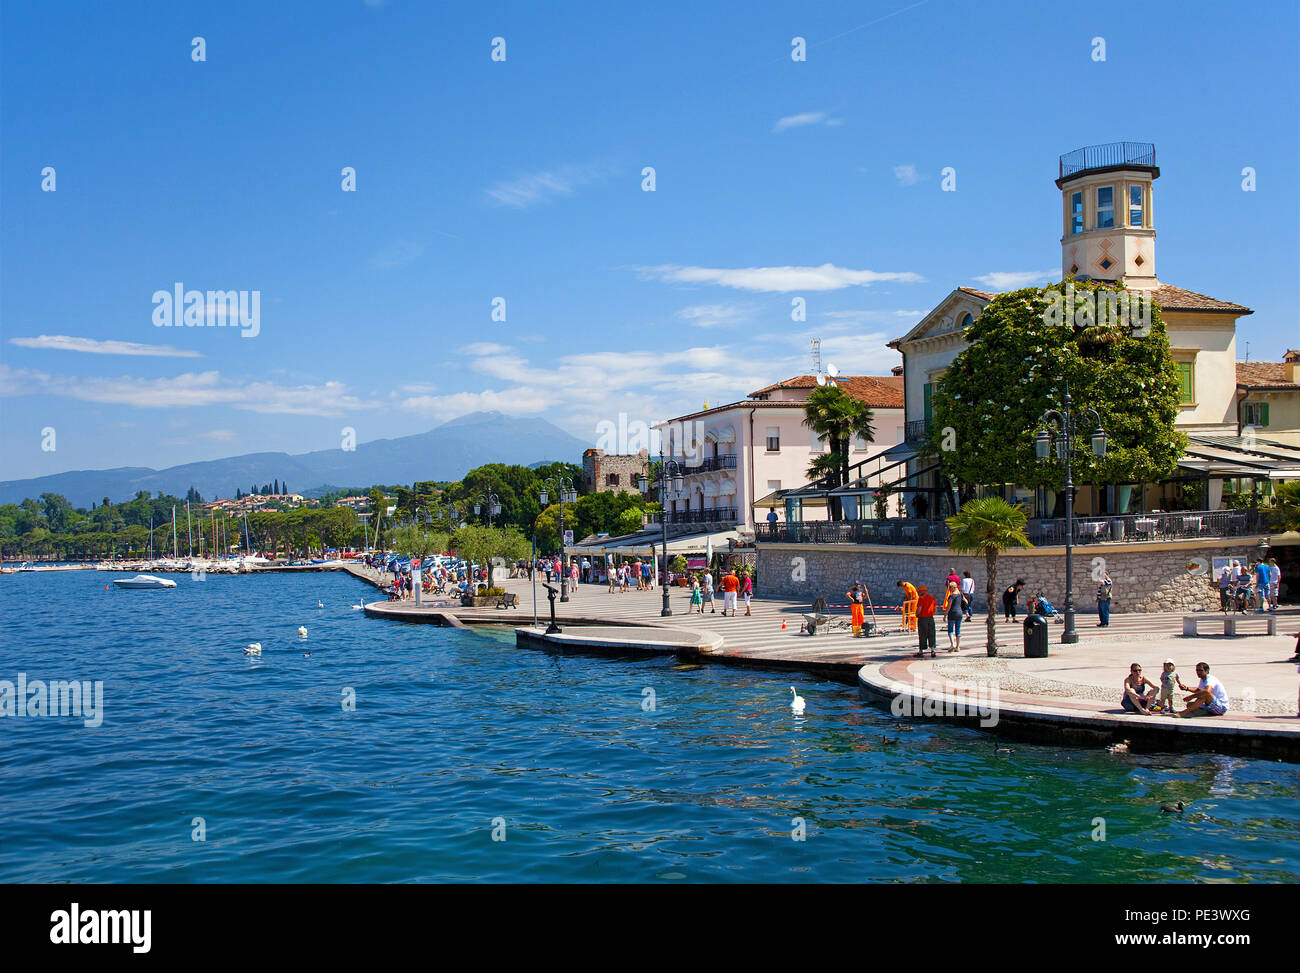 "Menschen auf der Seepromenade von Lazise, Gardasee, Verona, Italien | Leute an der Seepromenade von Lazise, Gardasee, Provinz Verona, Italien Stockfoto